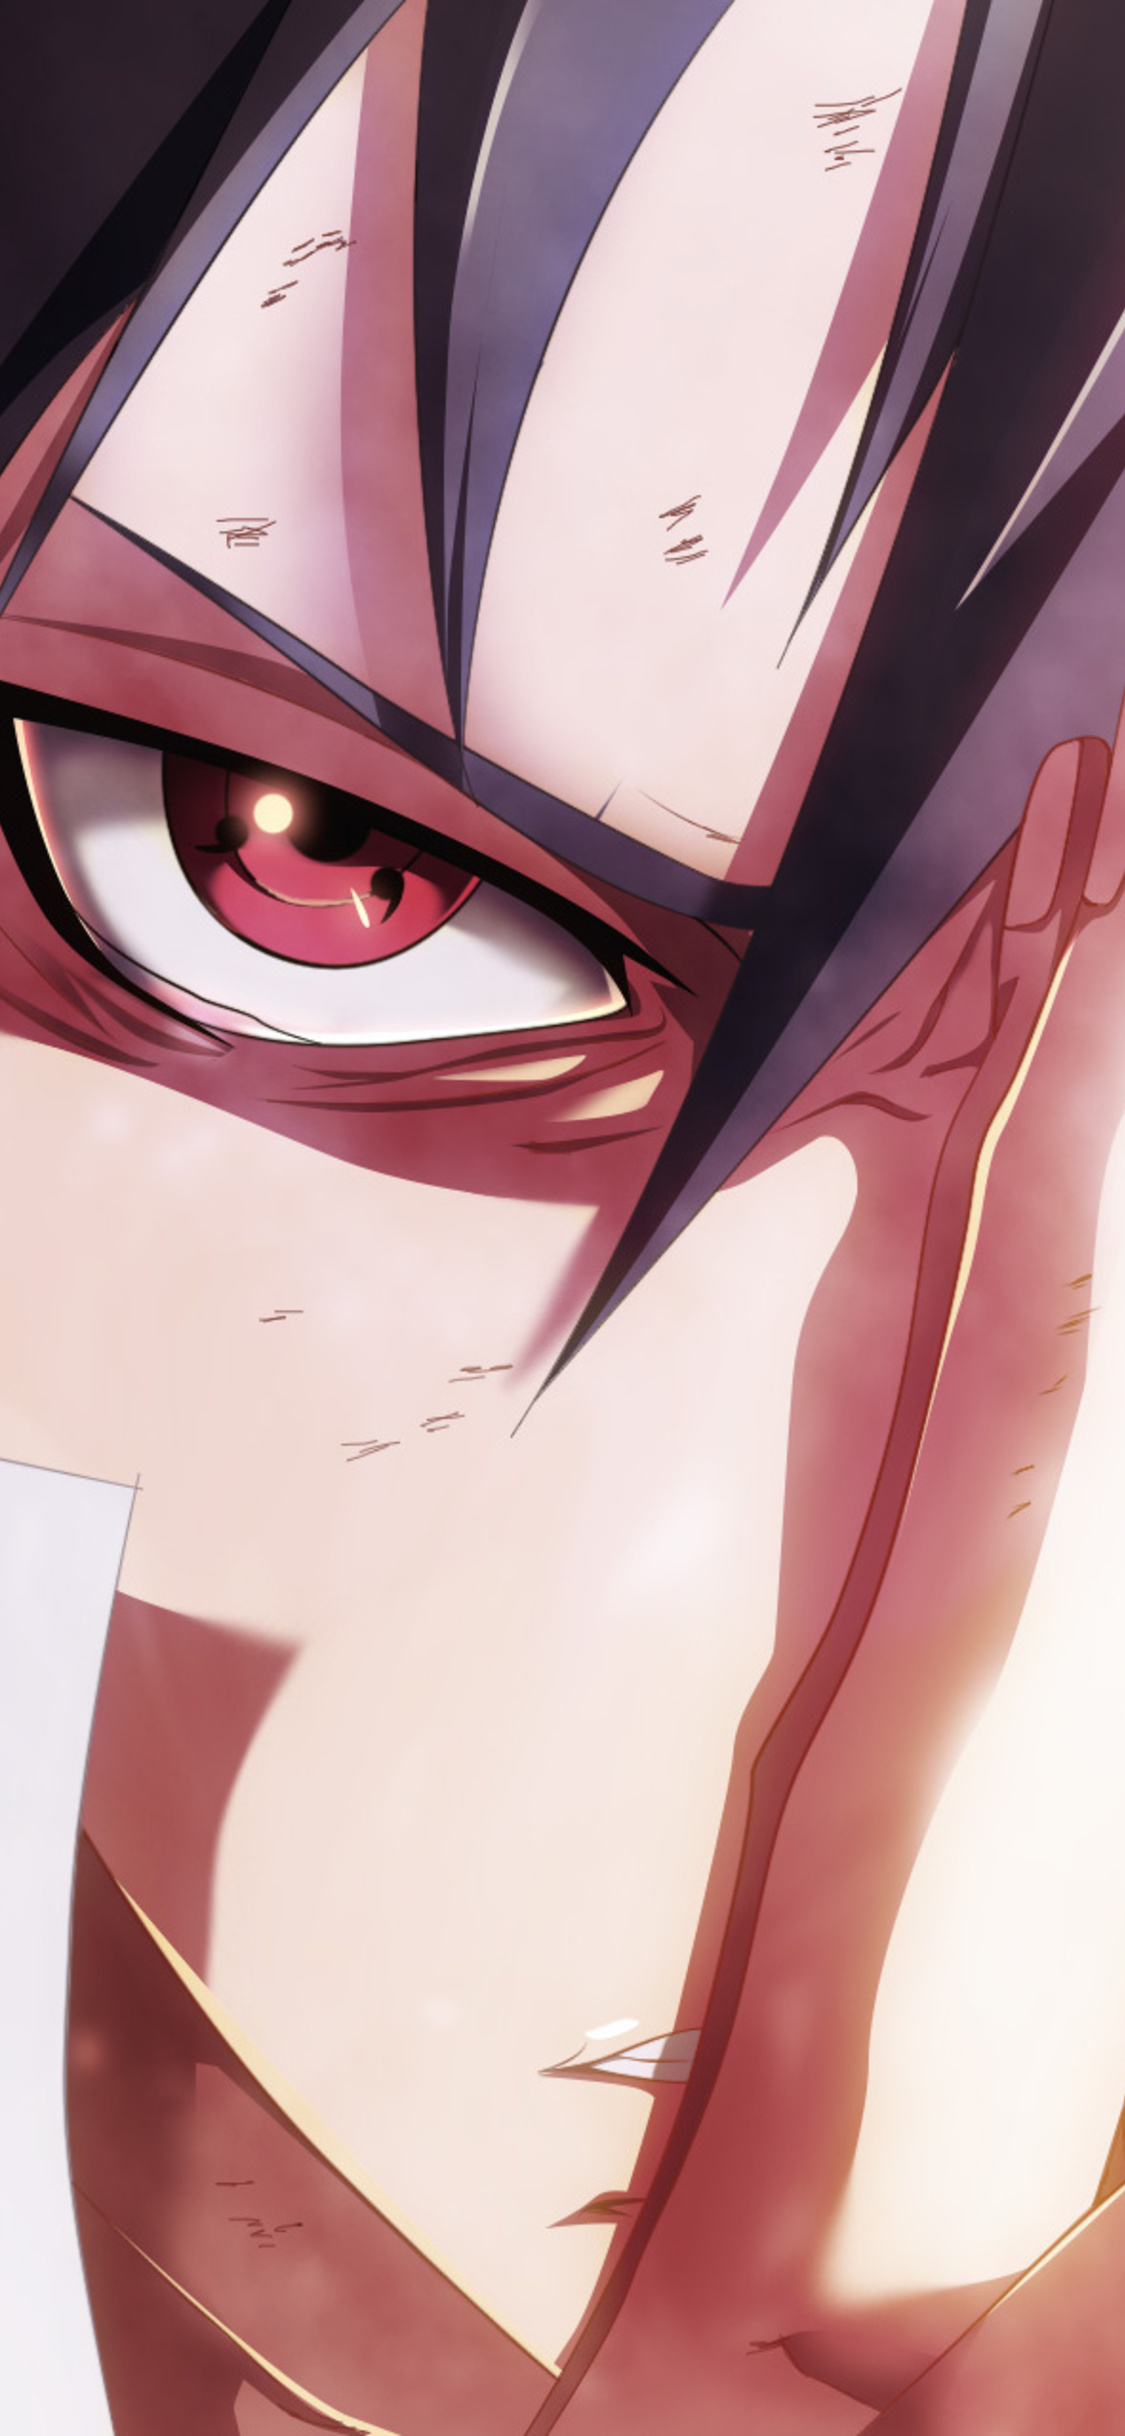 Naruto vs sasuke aesthetic Wallpapers Download | MobCup